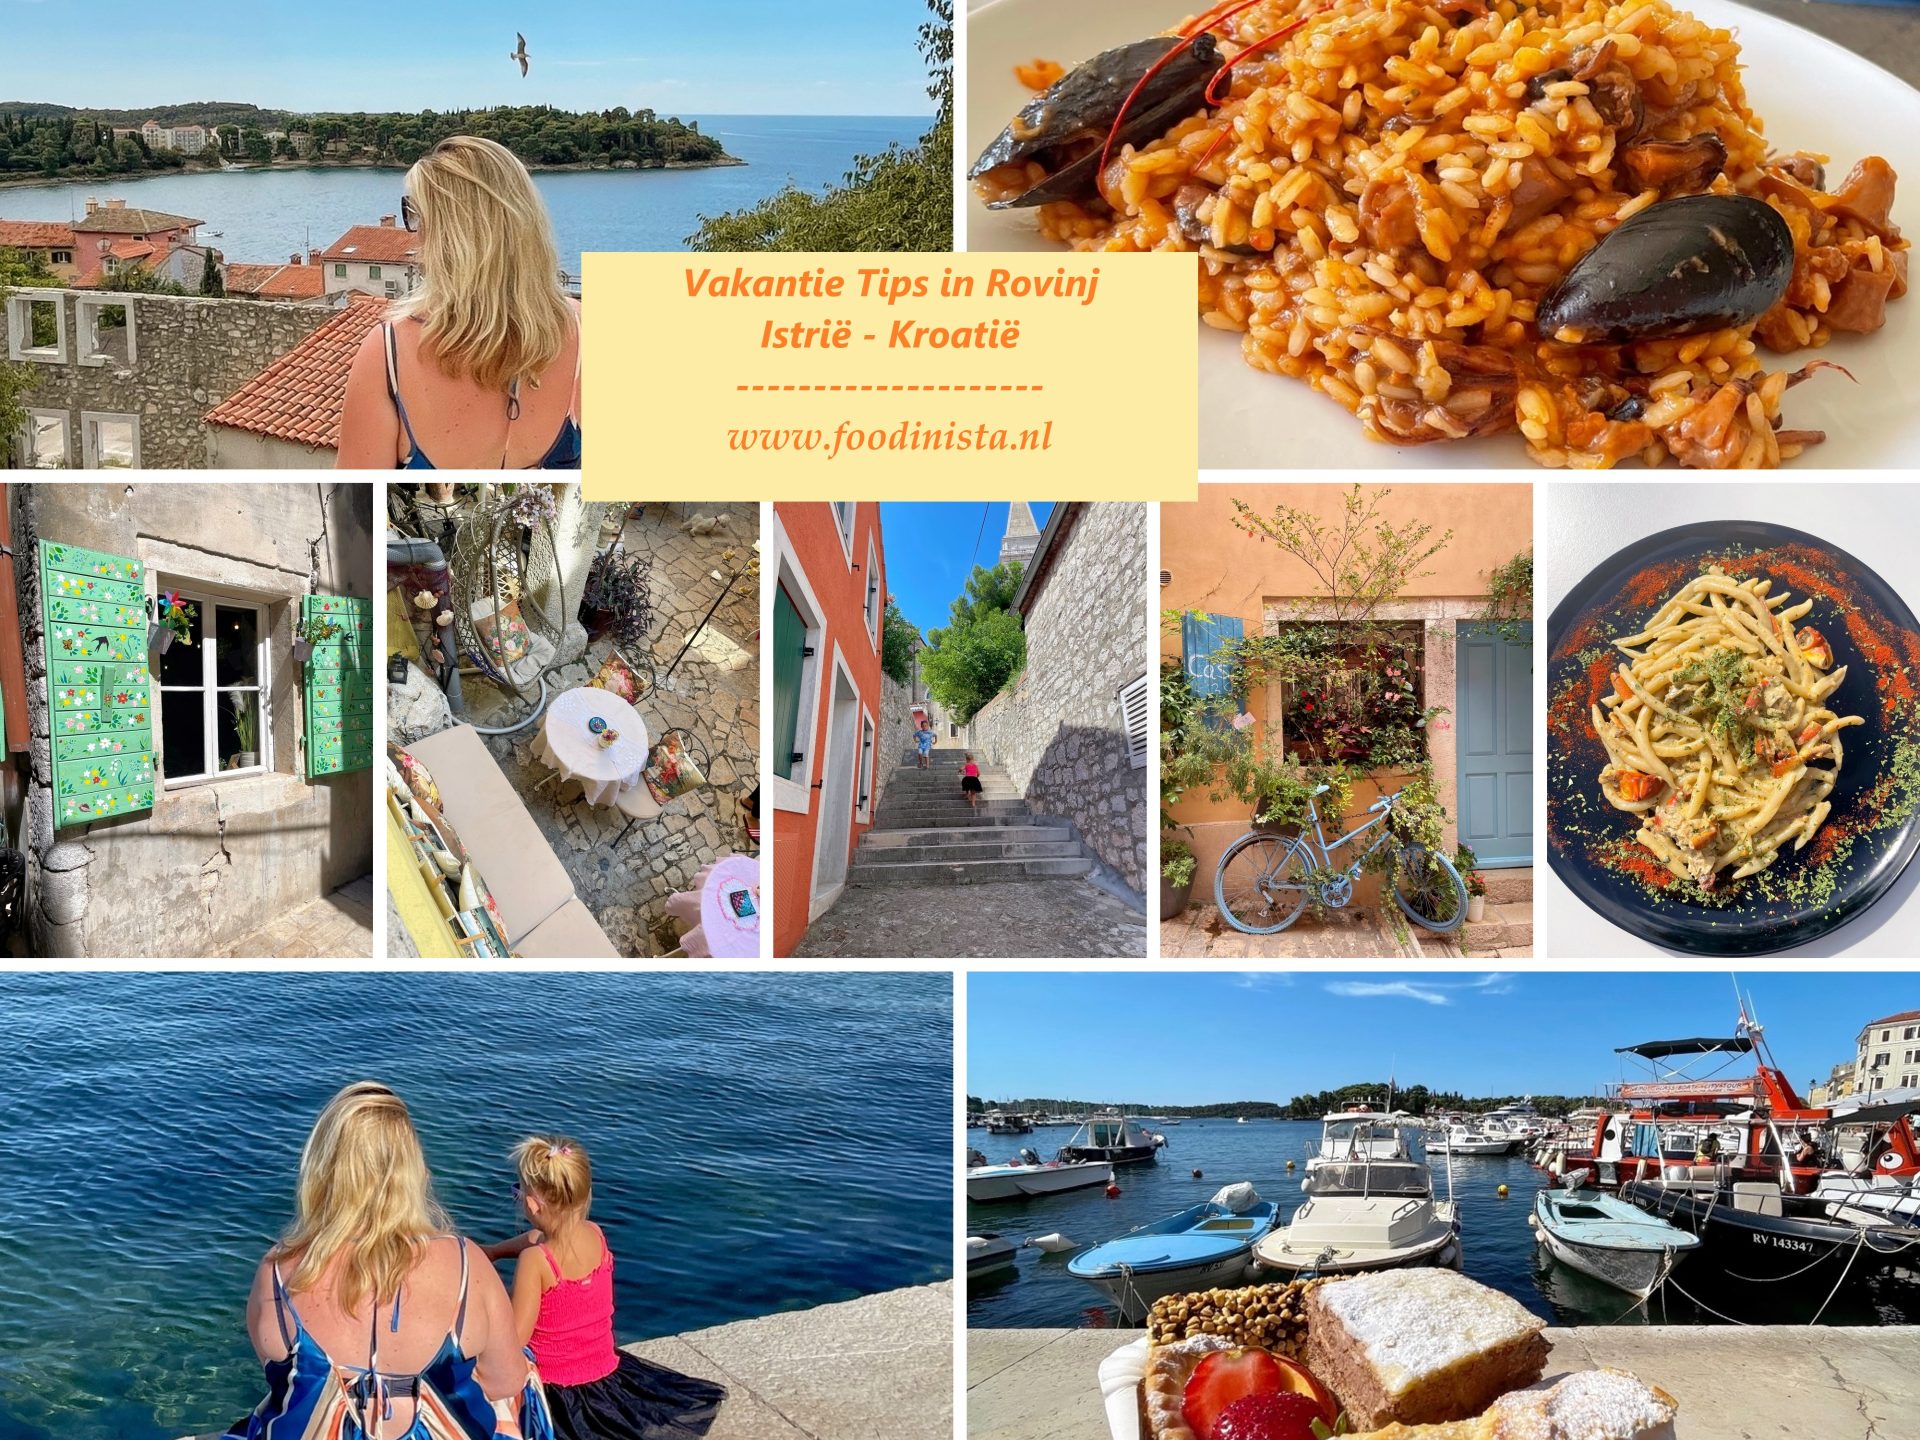 Vakantie in Rovinj tips - Wat is er te zien en doen - Istrië Kroatië - Foodinista